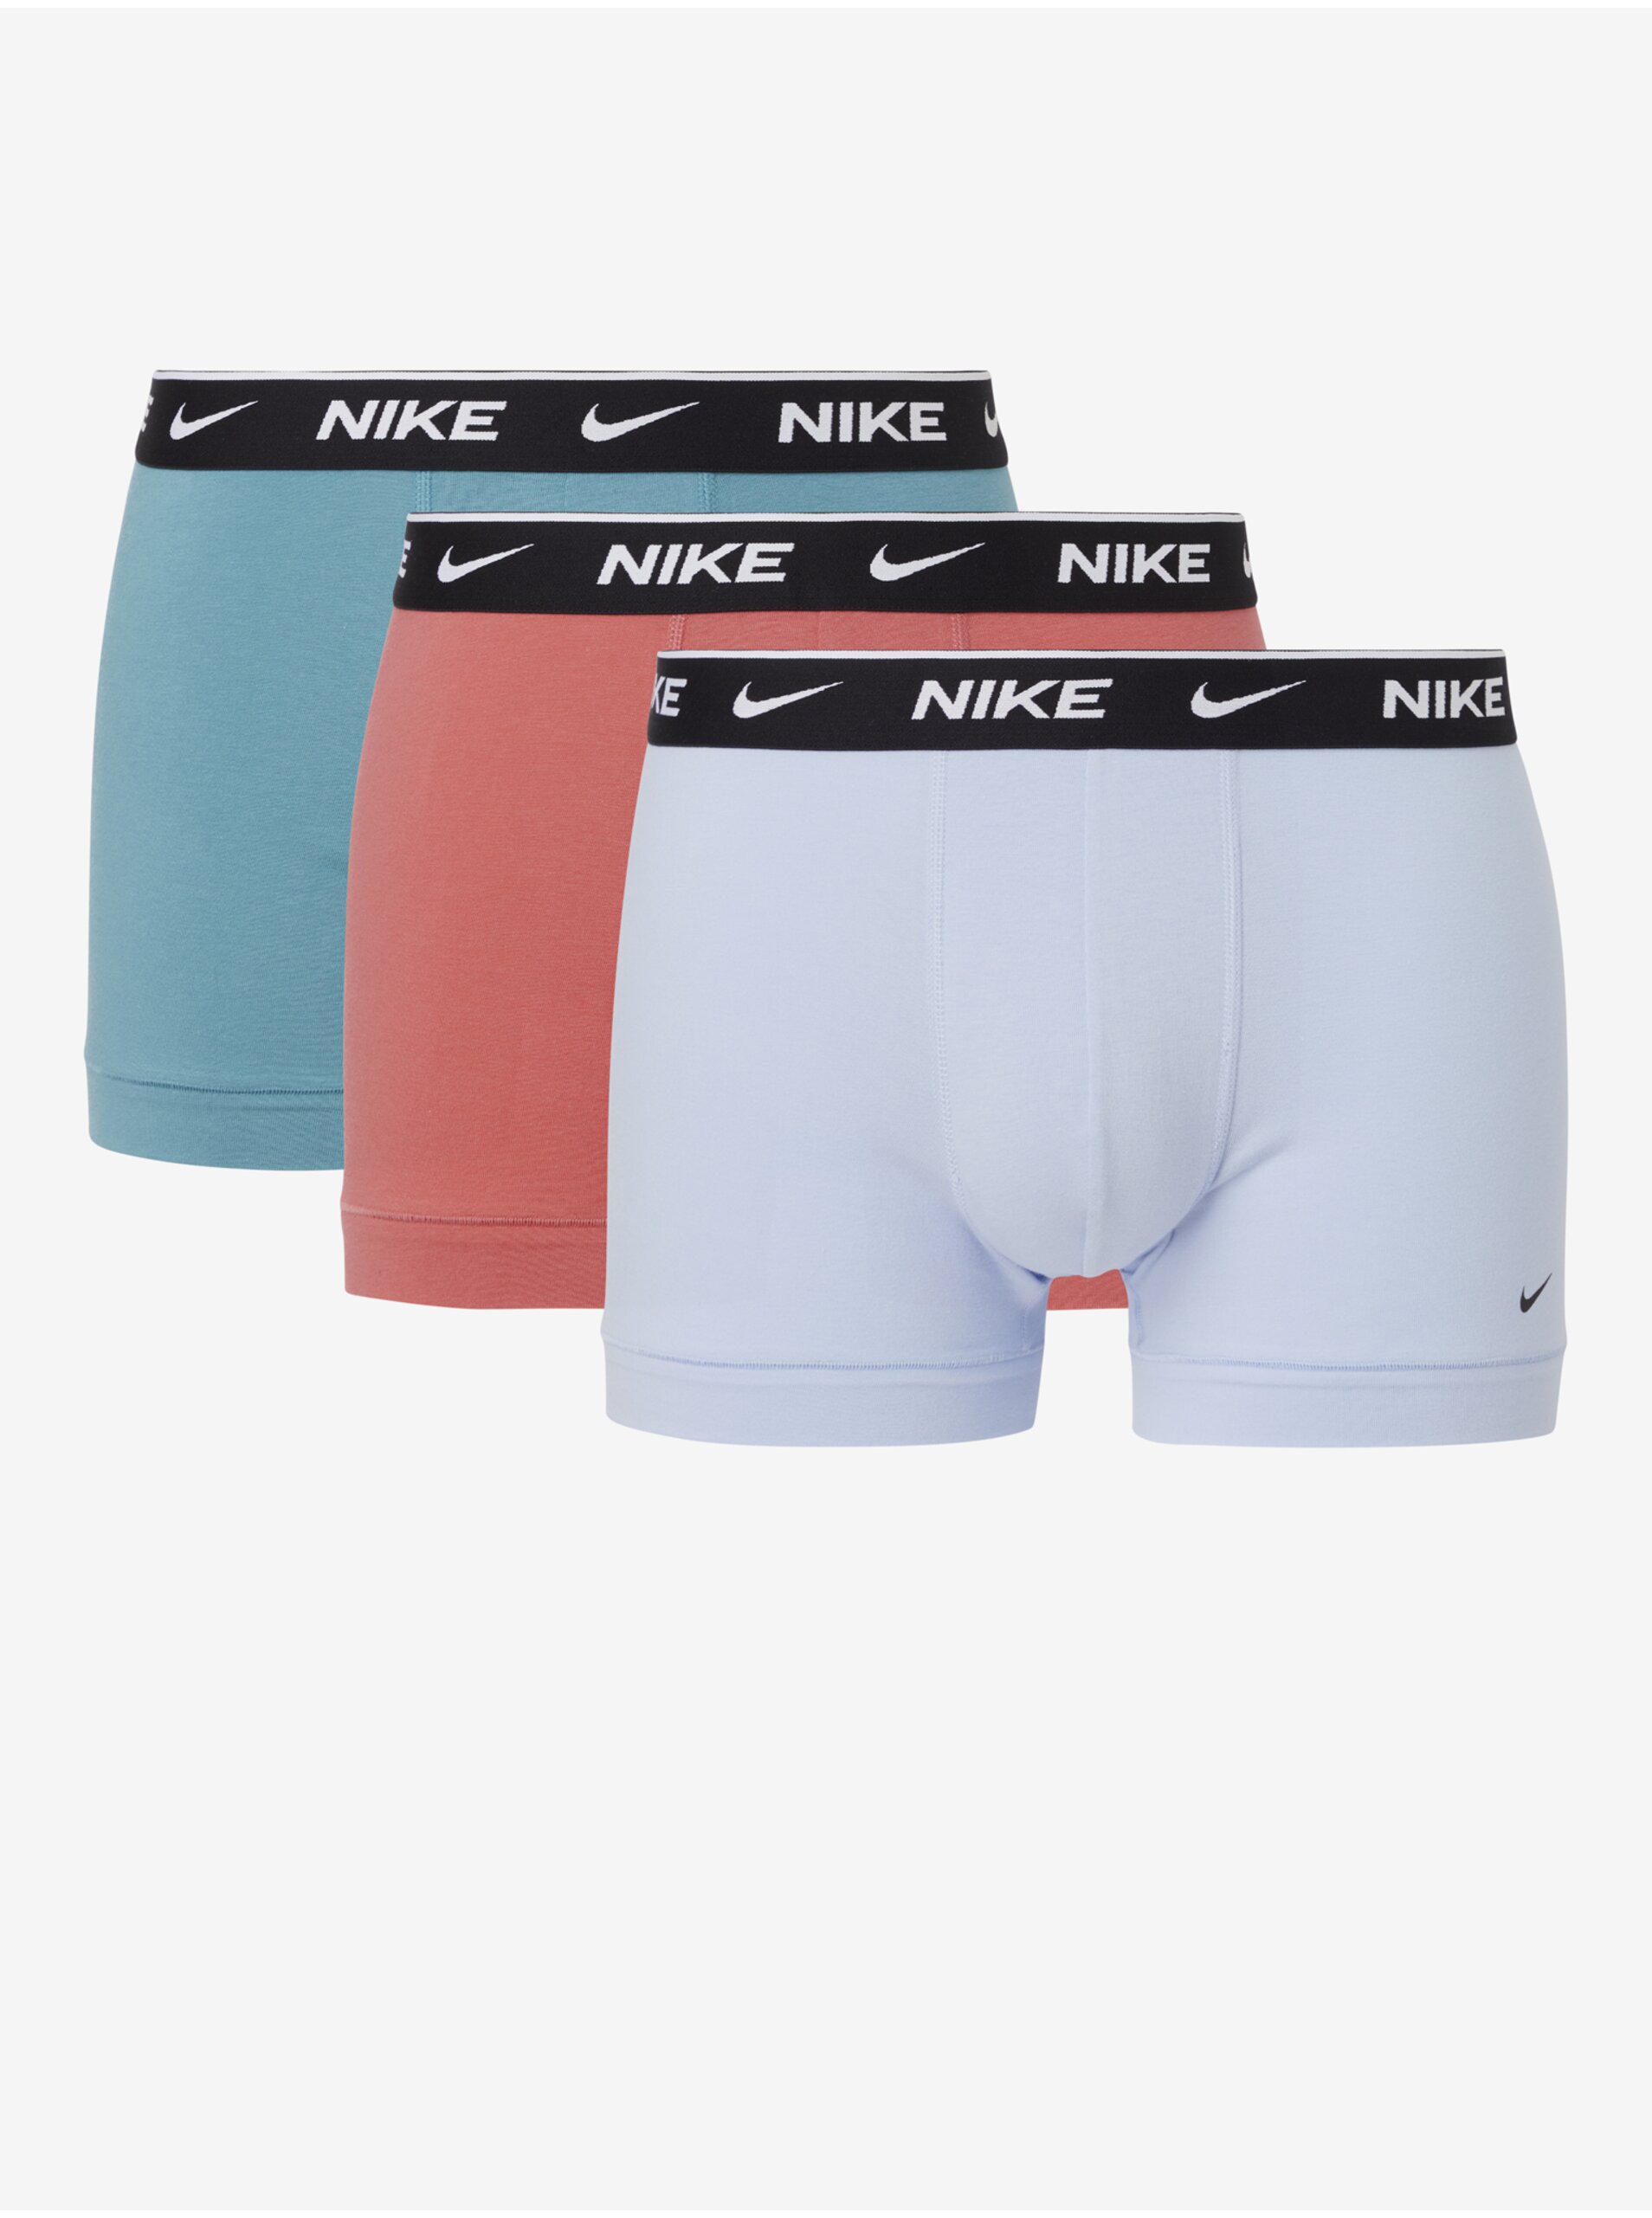 Levně Sada tří pánských boxerek v bílé, světle modré a růžové barvě Nike